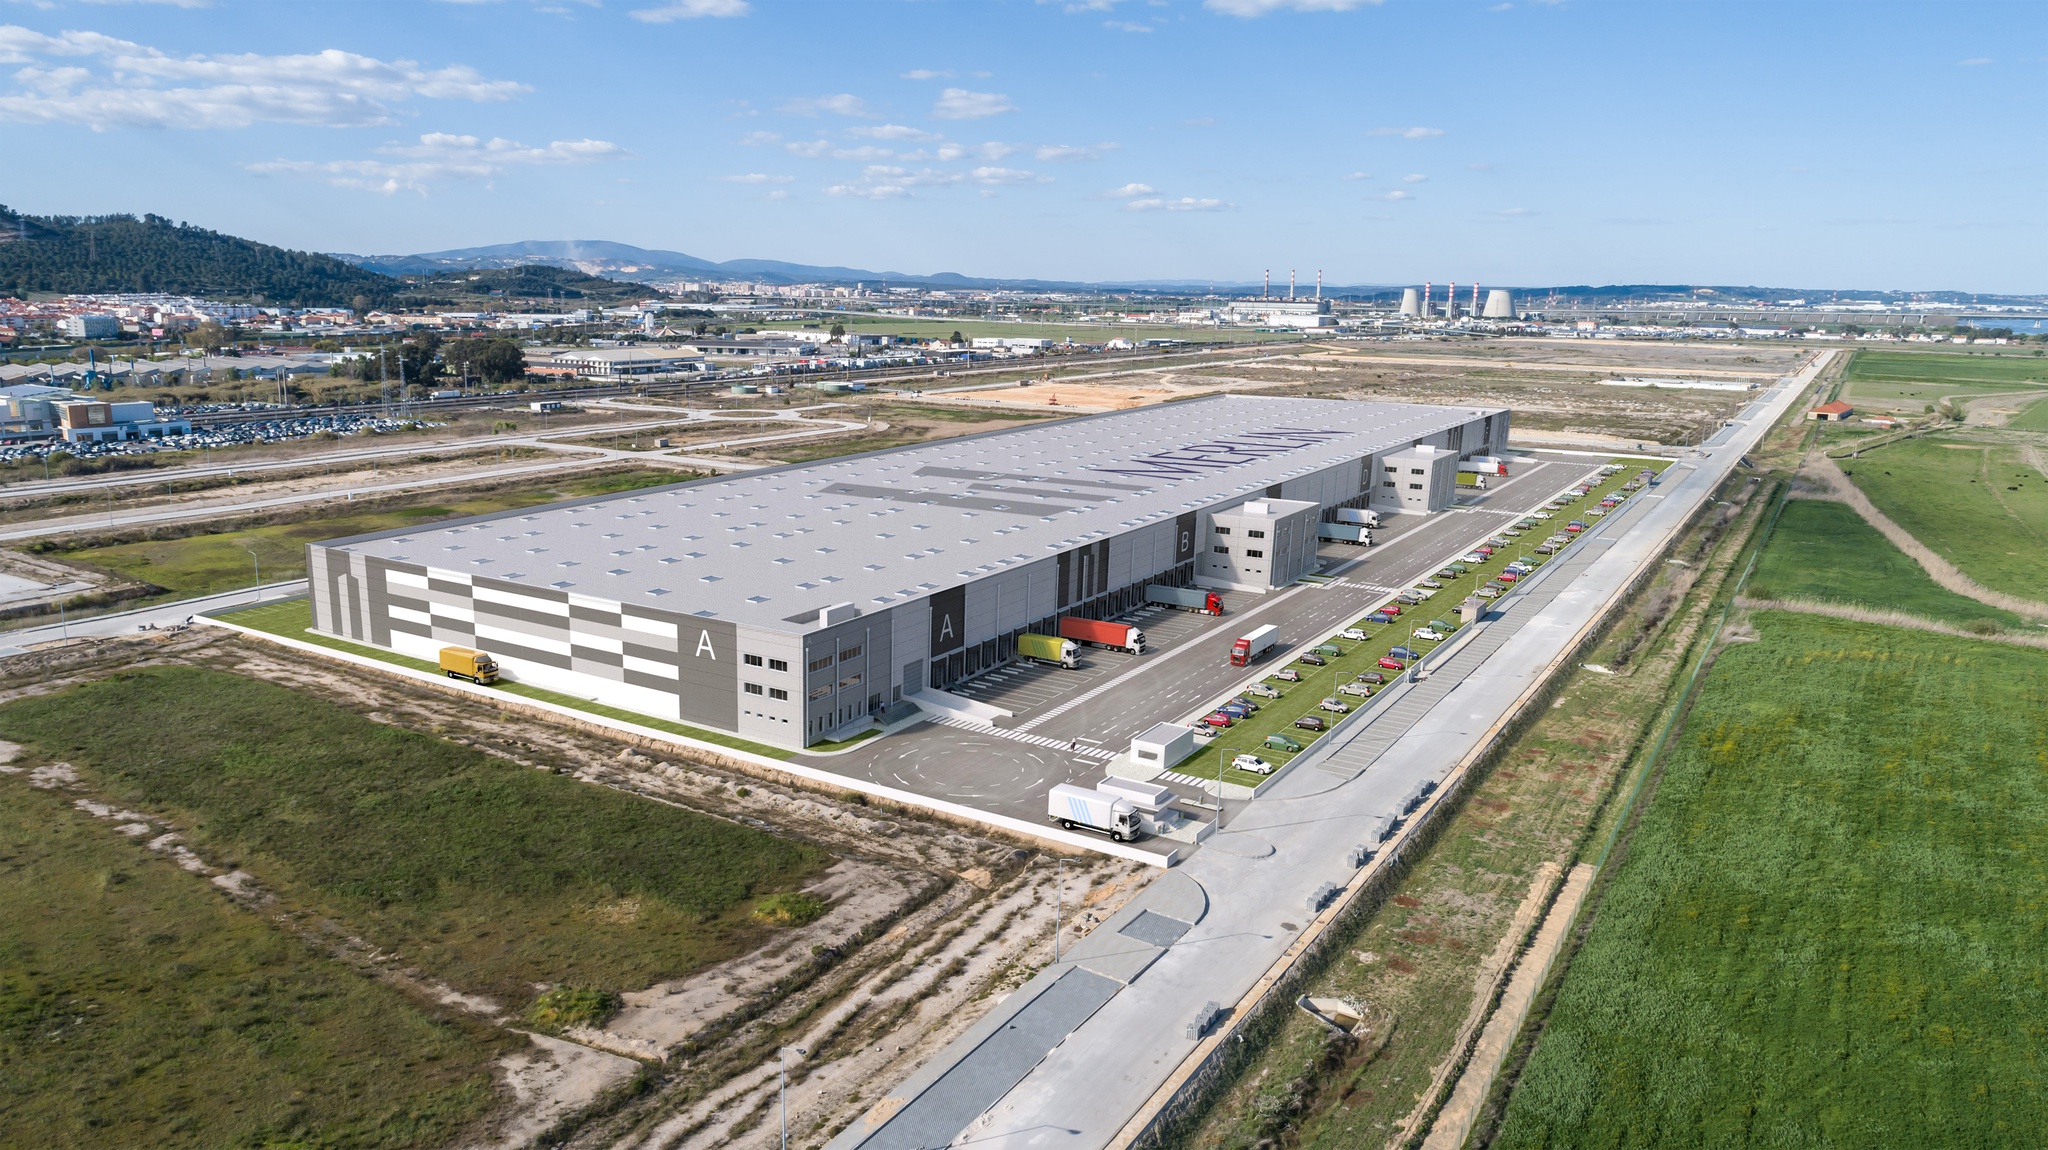 Leroy Merlin continua lógica de expansão e inaugura nova loja em Portugal -  Distribuição Hoje